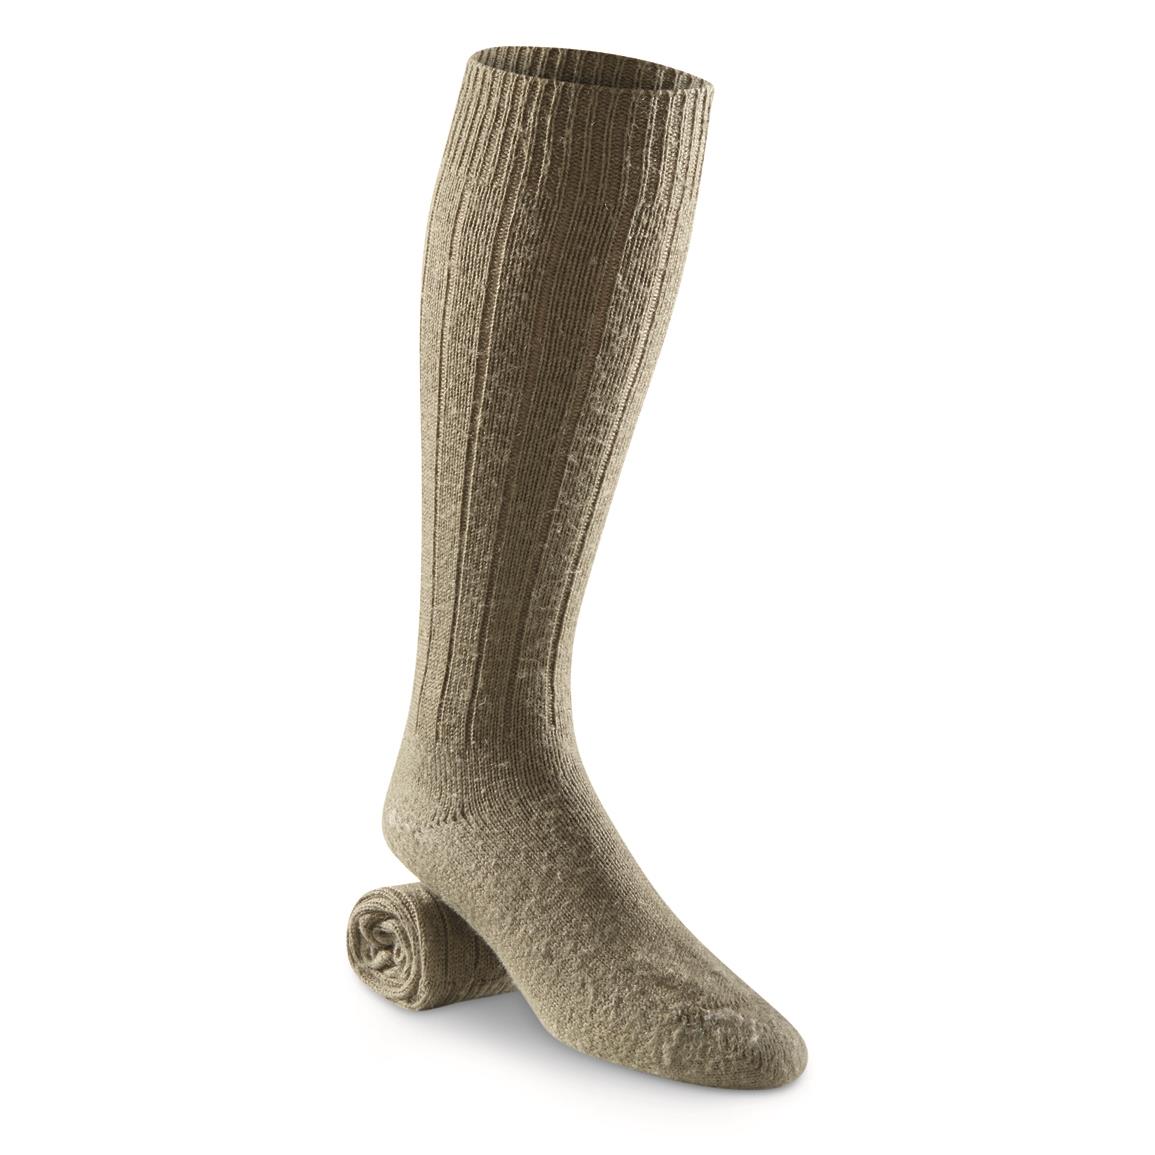 German Military Surplus Wool Blend Socks, 15 Pairs, Used, Olive Drab